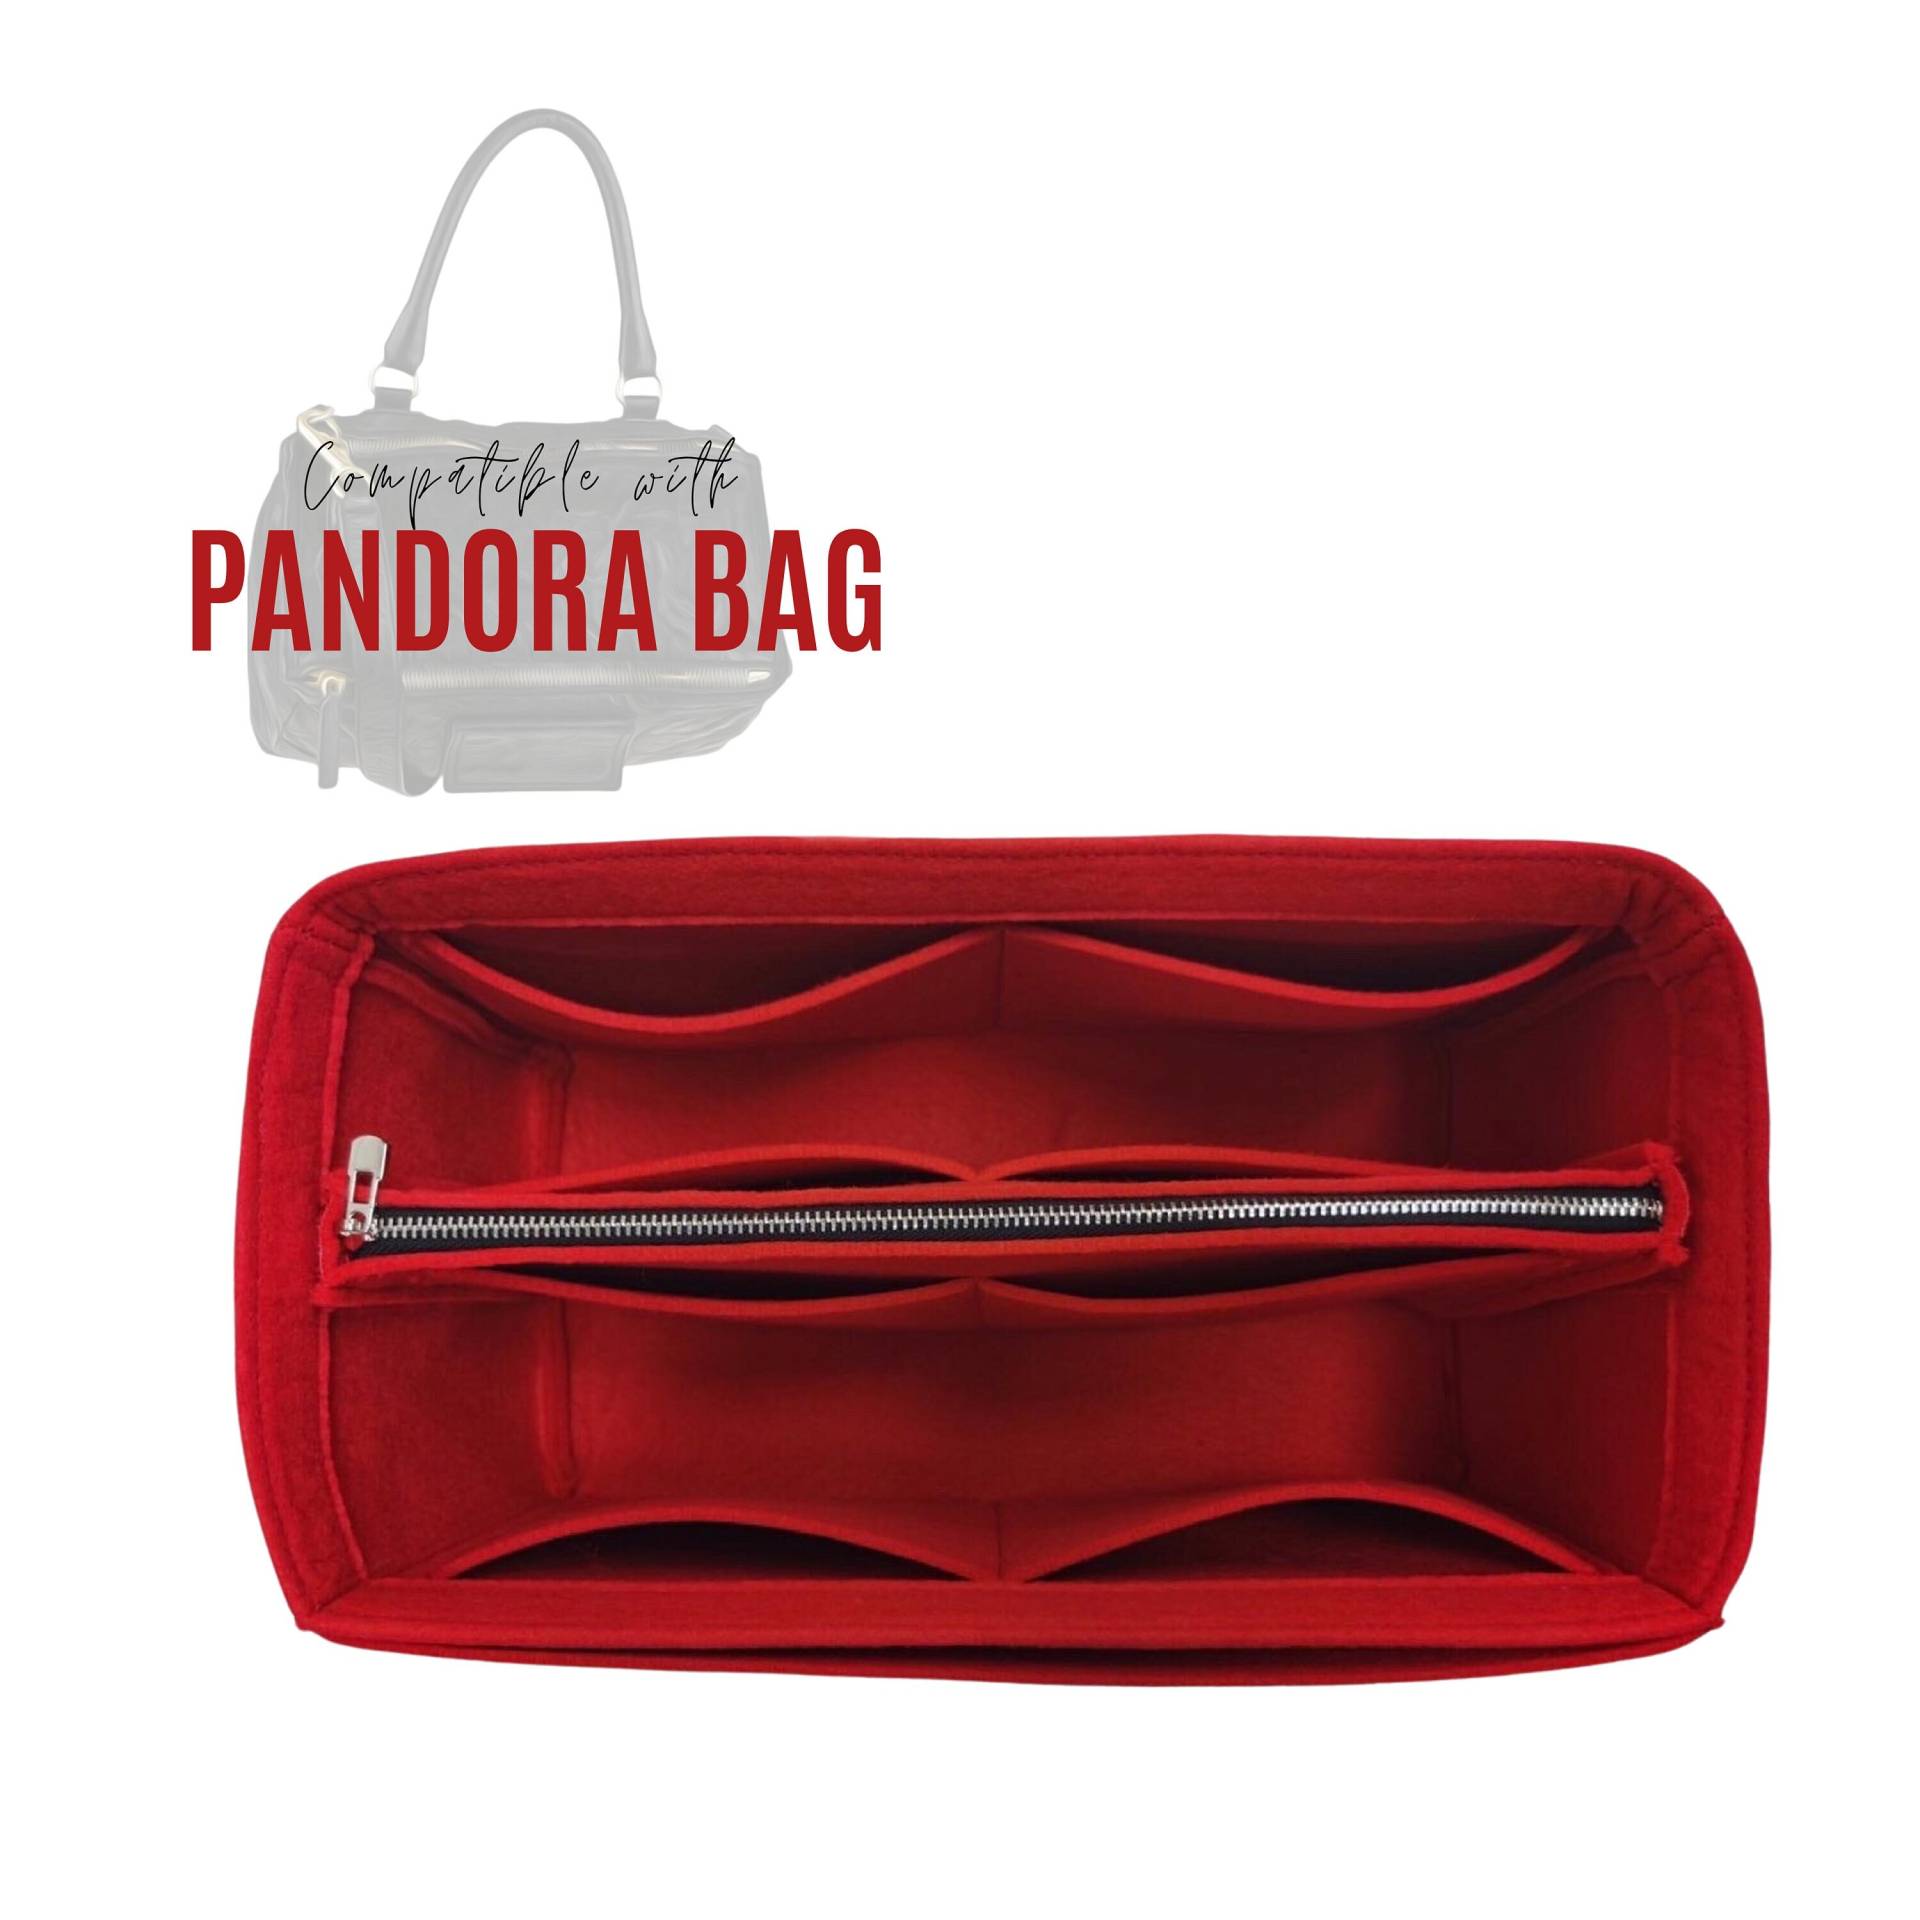 Pandora Tote Bag Organizer/Insert Mit Abnehmbarer Reißverschlusstasche Handtasche Aufbewahrung Geldbörse Filz Laptop Ipad Tasche von divitize